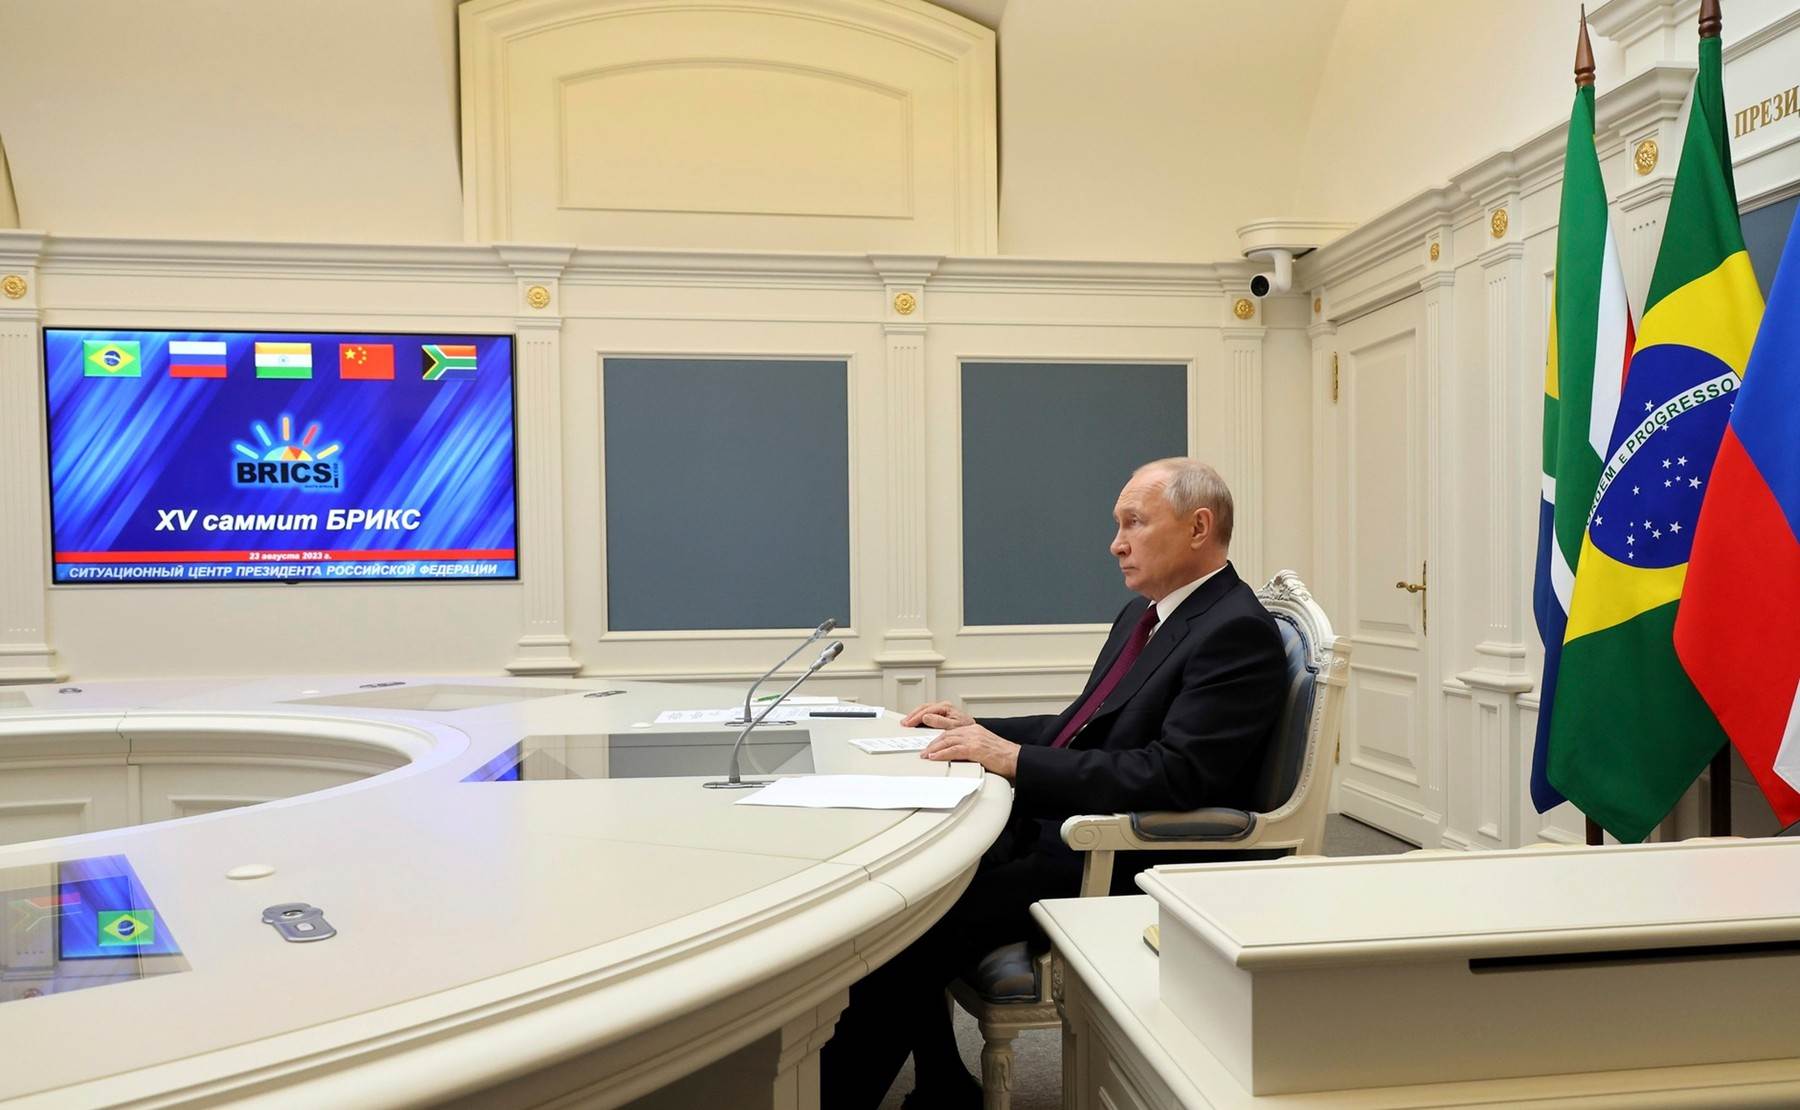  Putin virtualno sudjeluje na summitu BRICS-a 